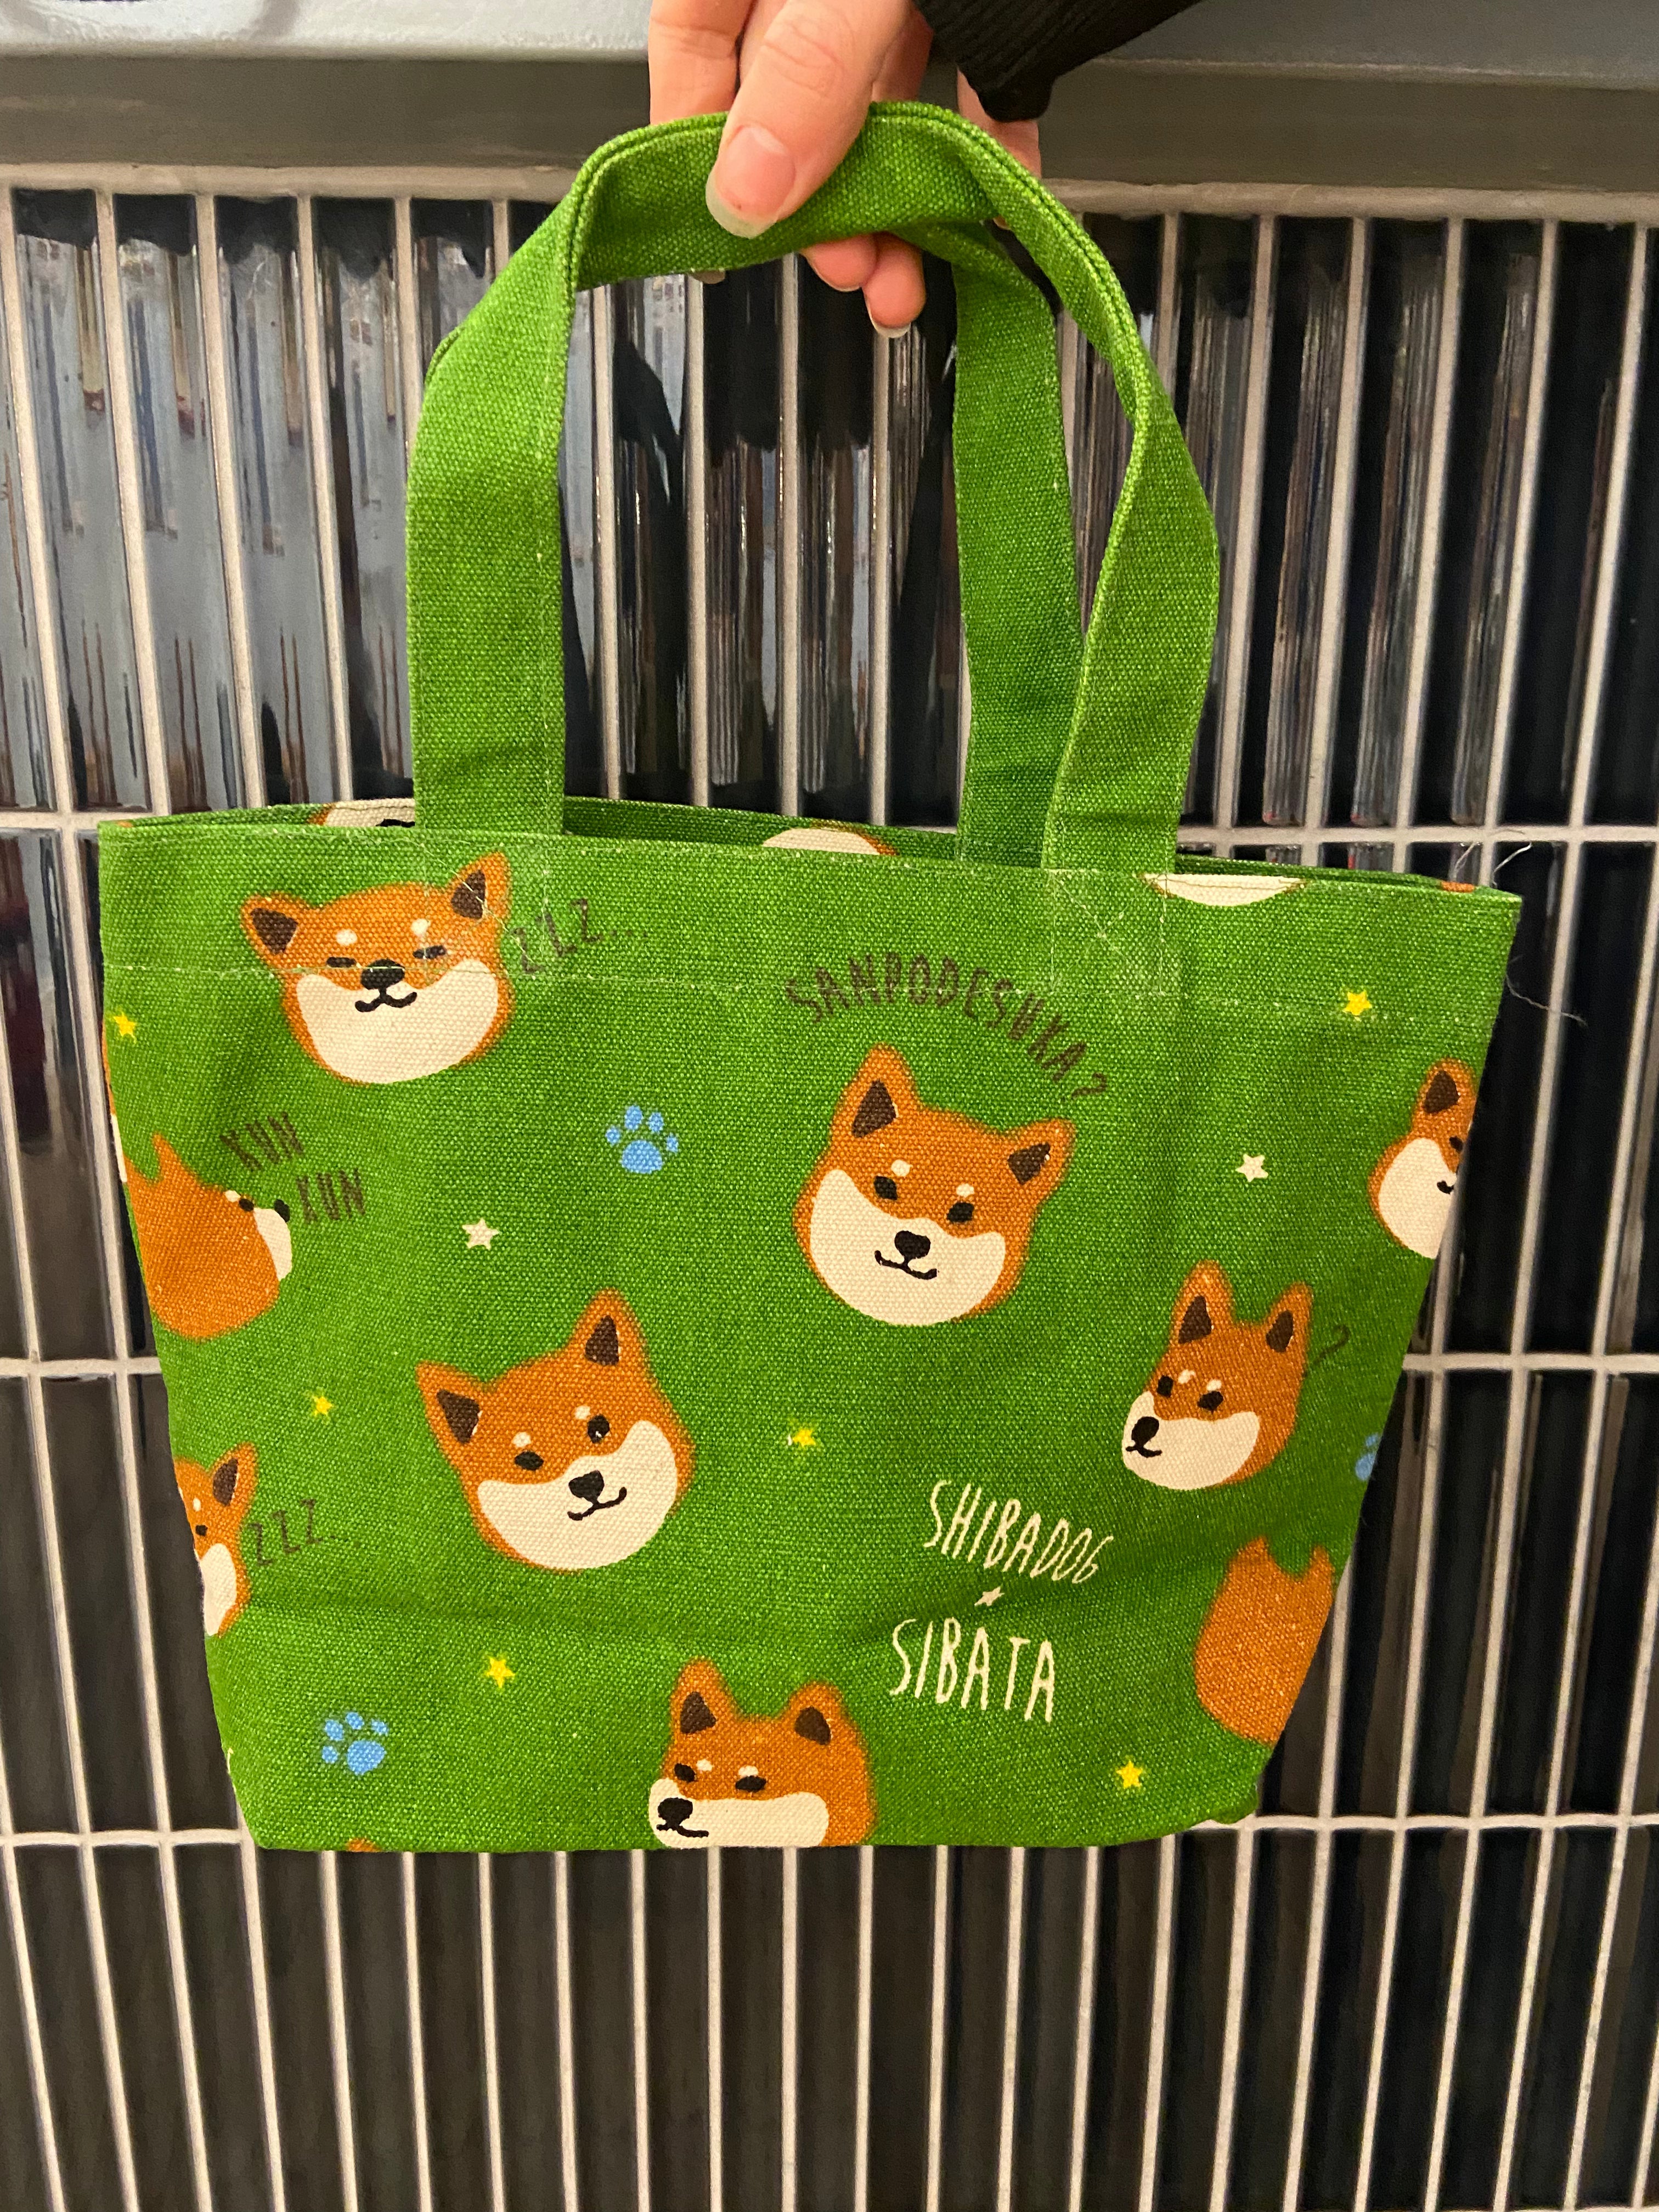 Bag with Shiba, green